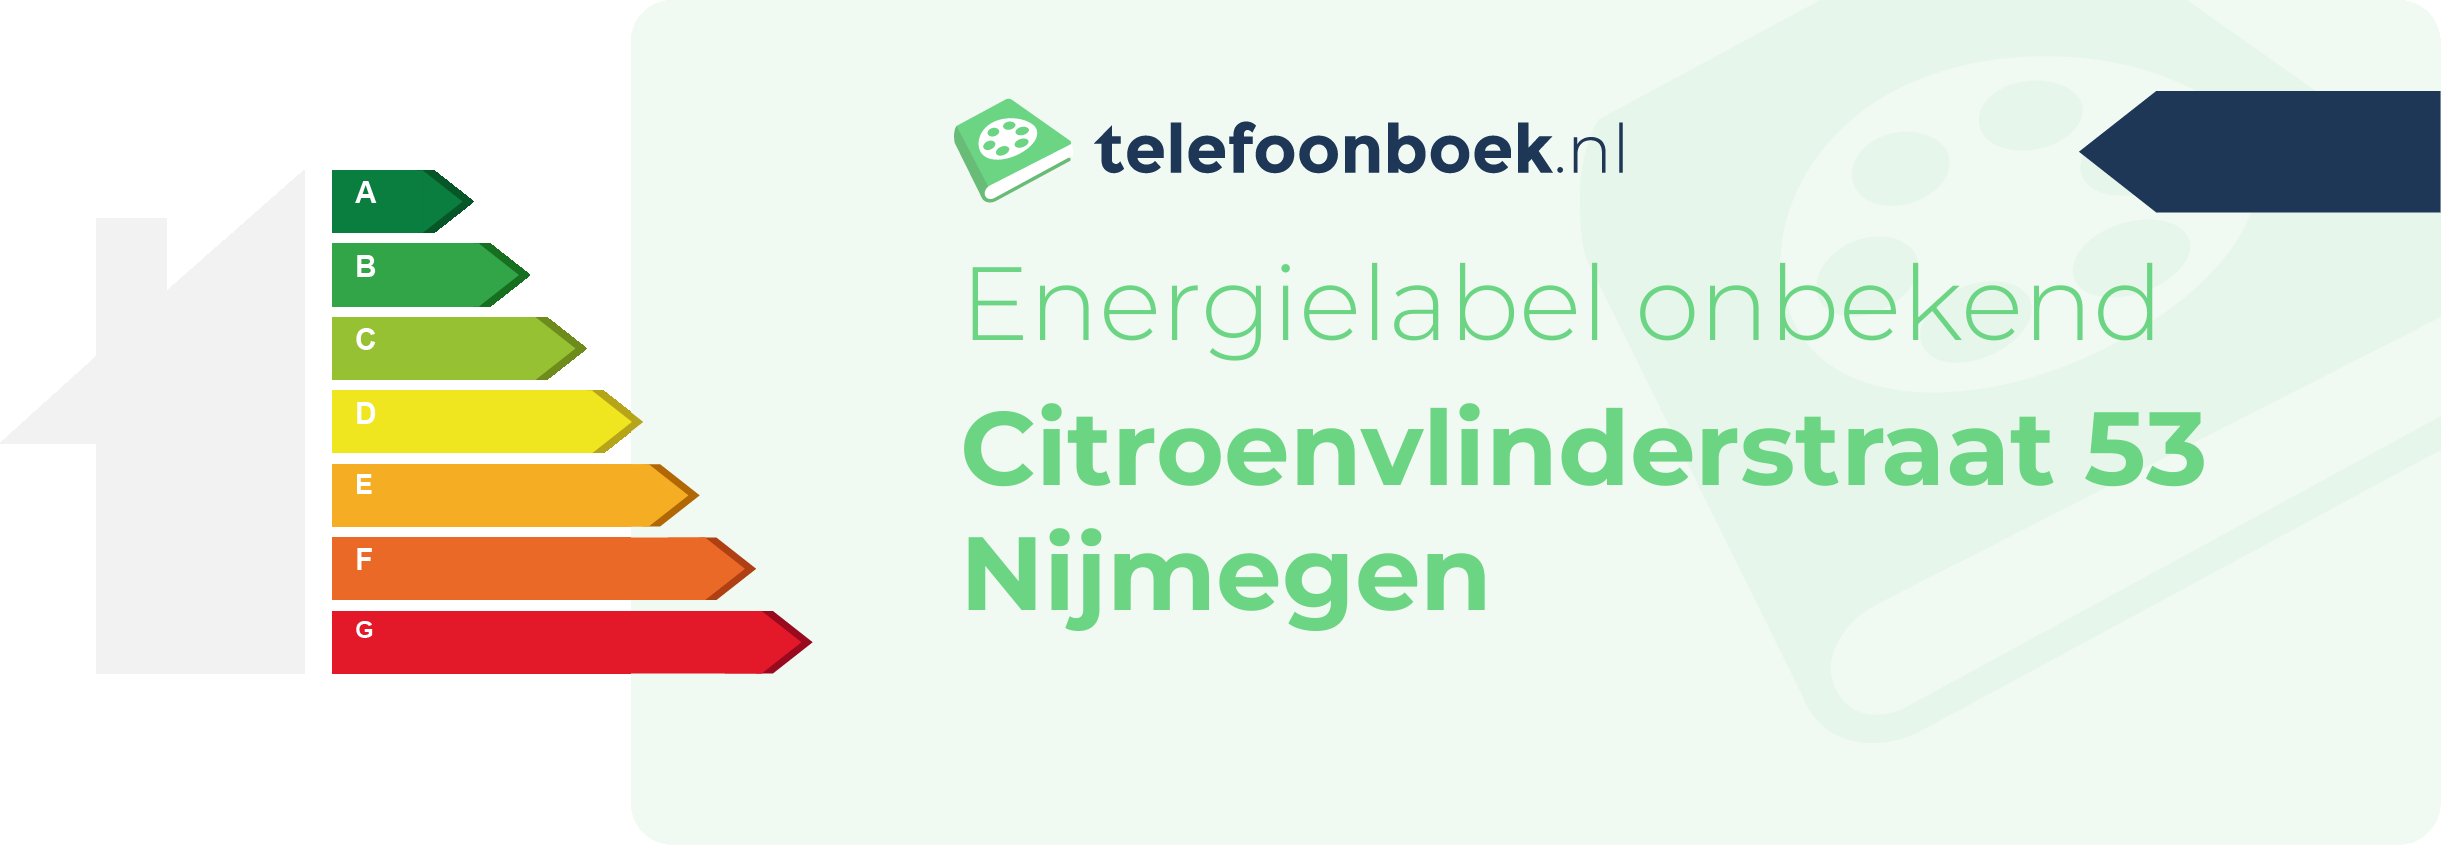 Energielabel Citroenvlinderstraat 53 Nijmegen